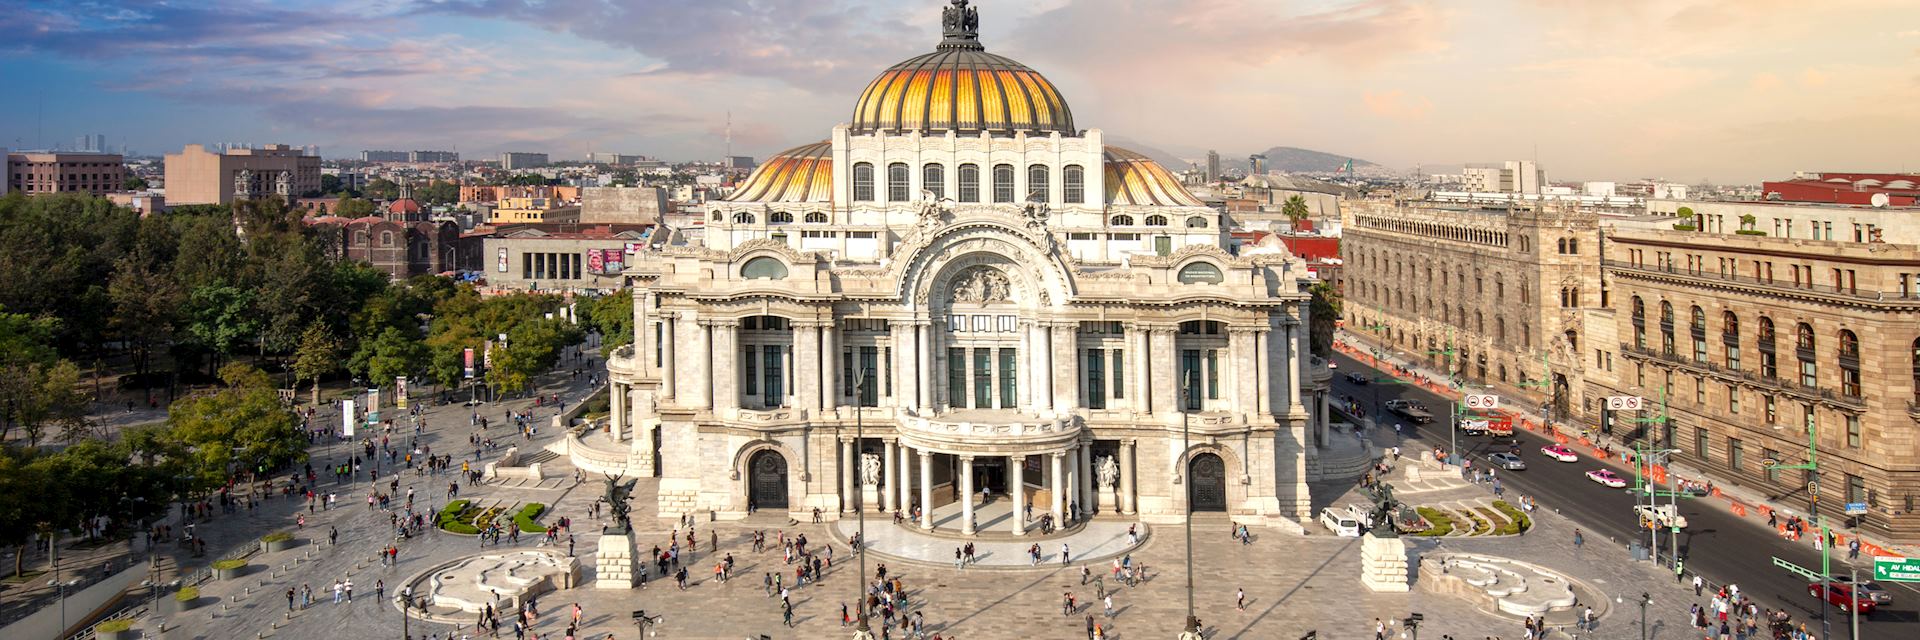 Mexico City Tour Bilingual Tour